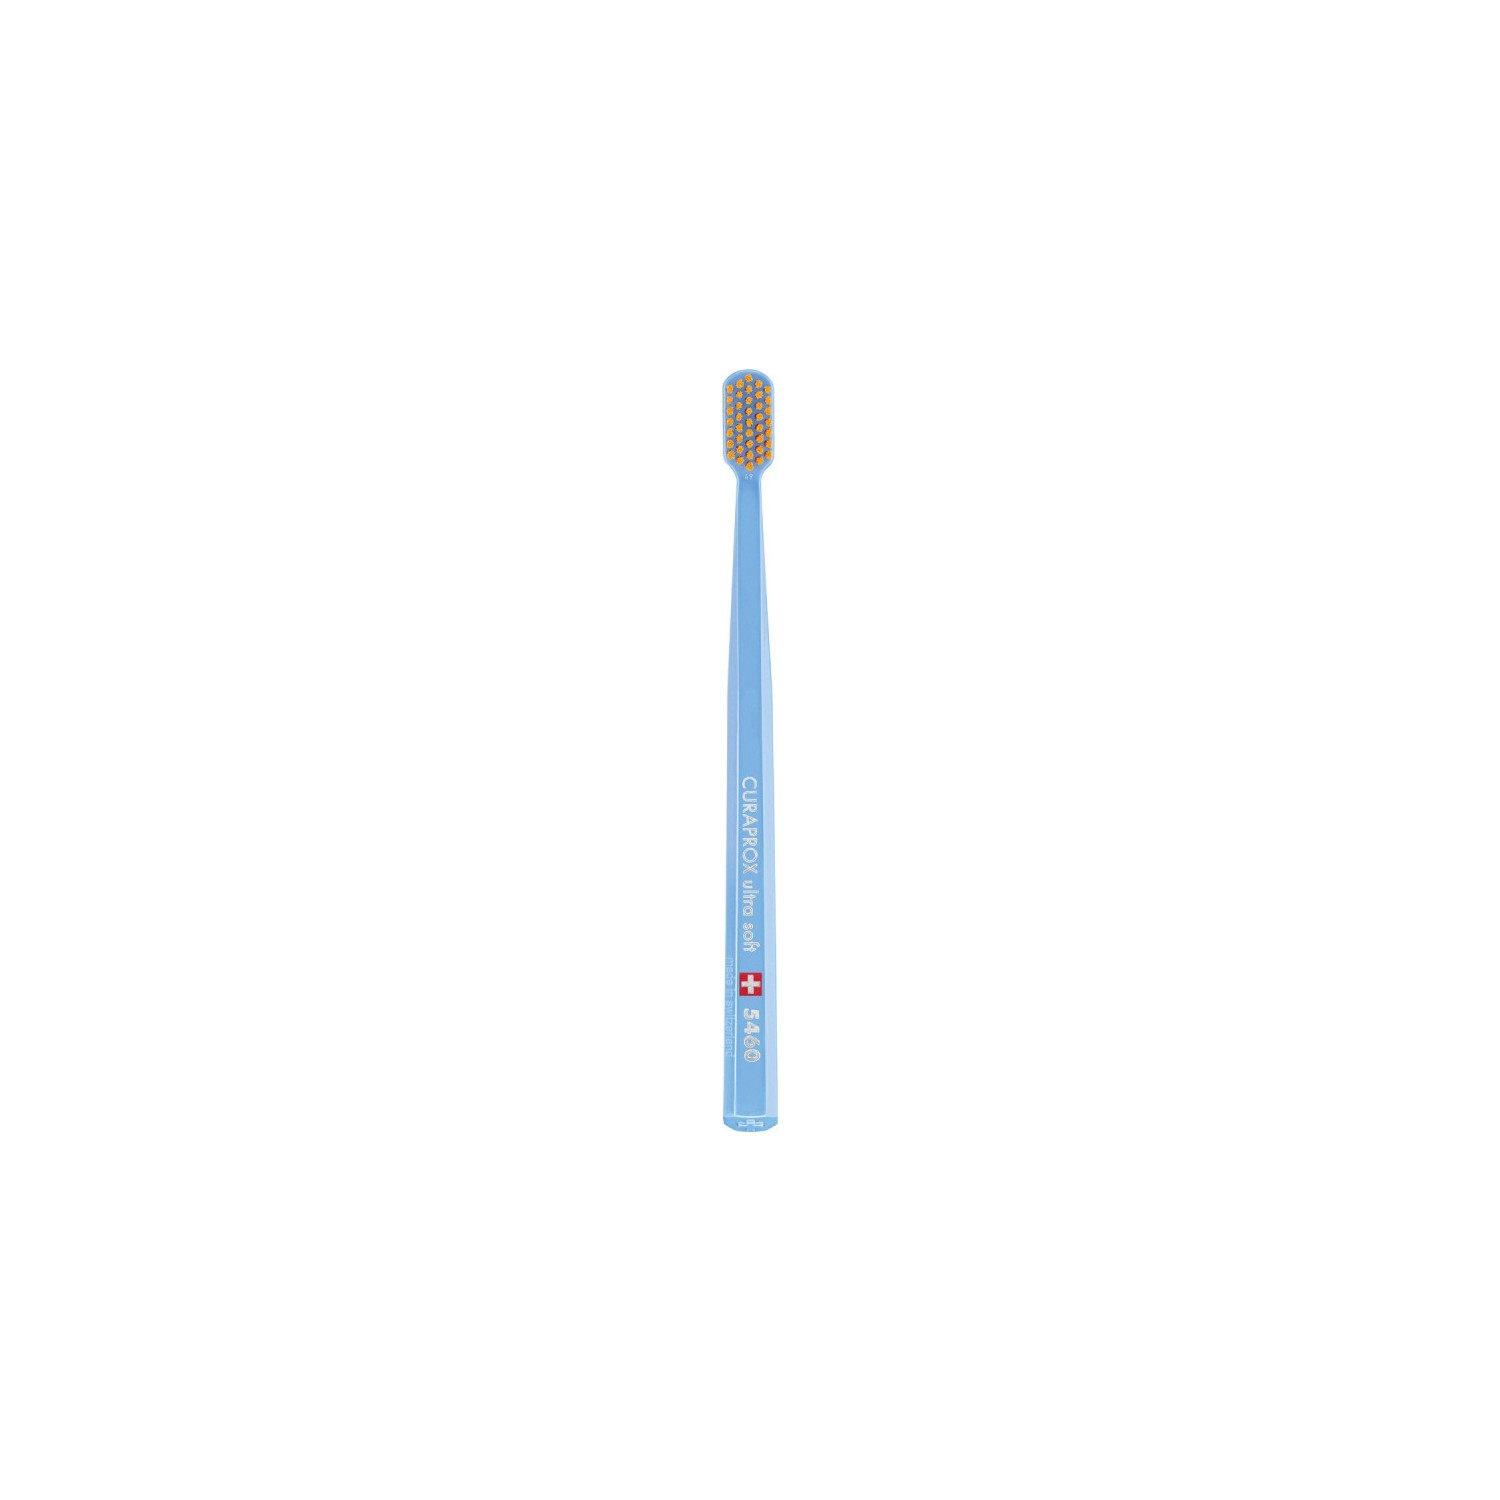 Зубная щетка Curaprox ультрамягкая CS5460, голубой household electric toothbrush usb charging soft hair waterproof wave vibration toothbrush